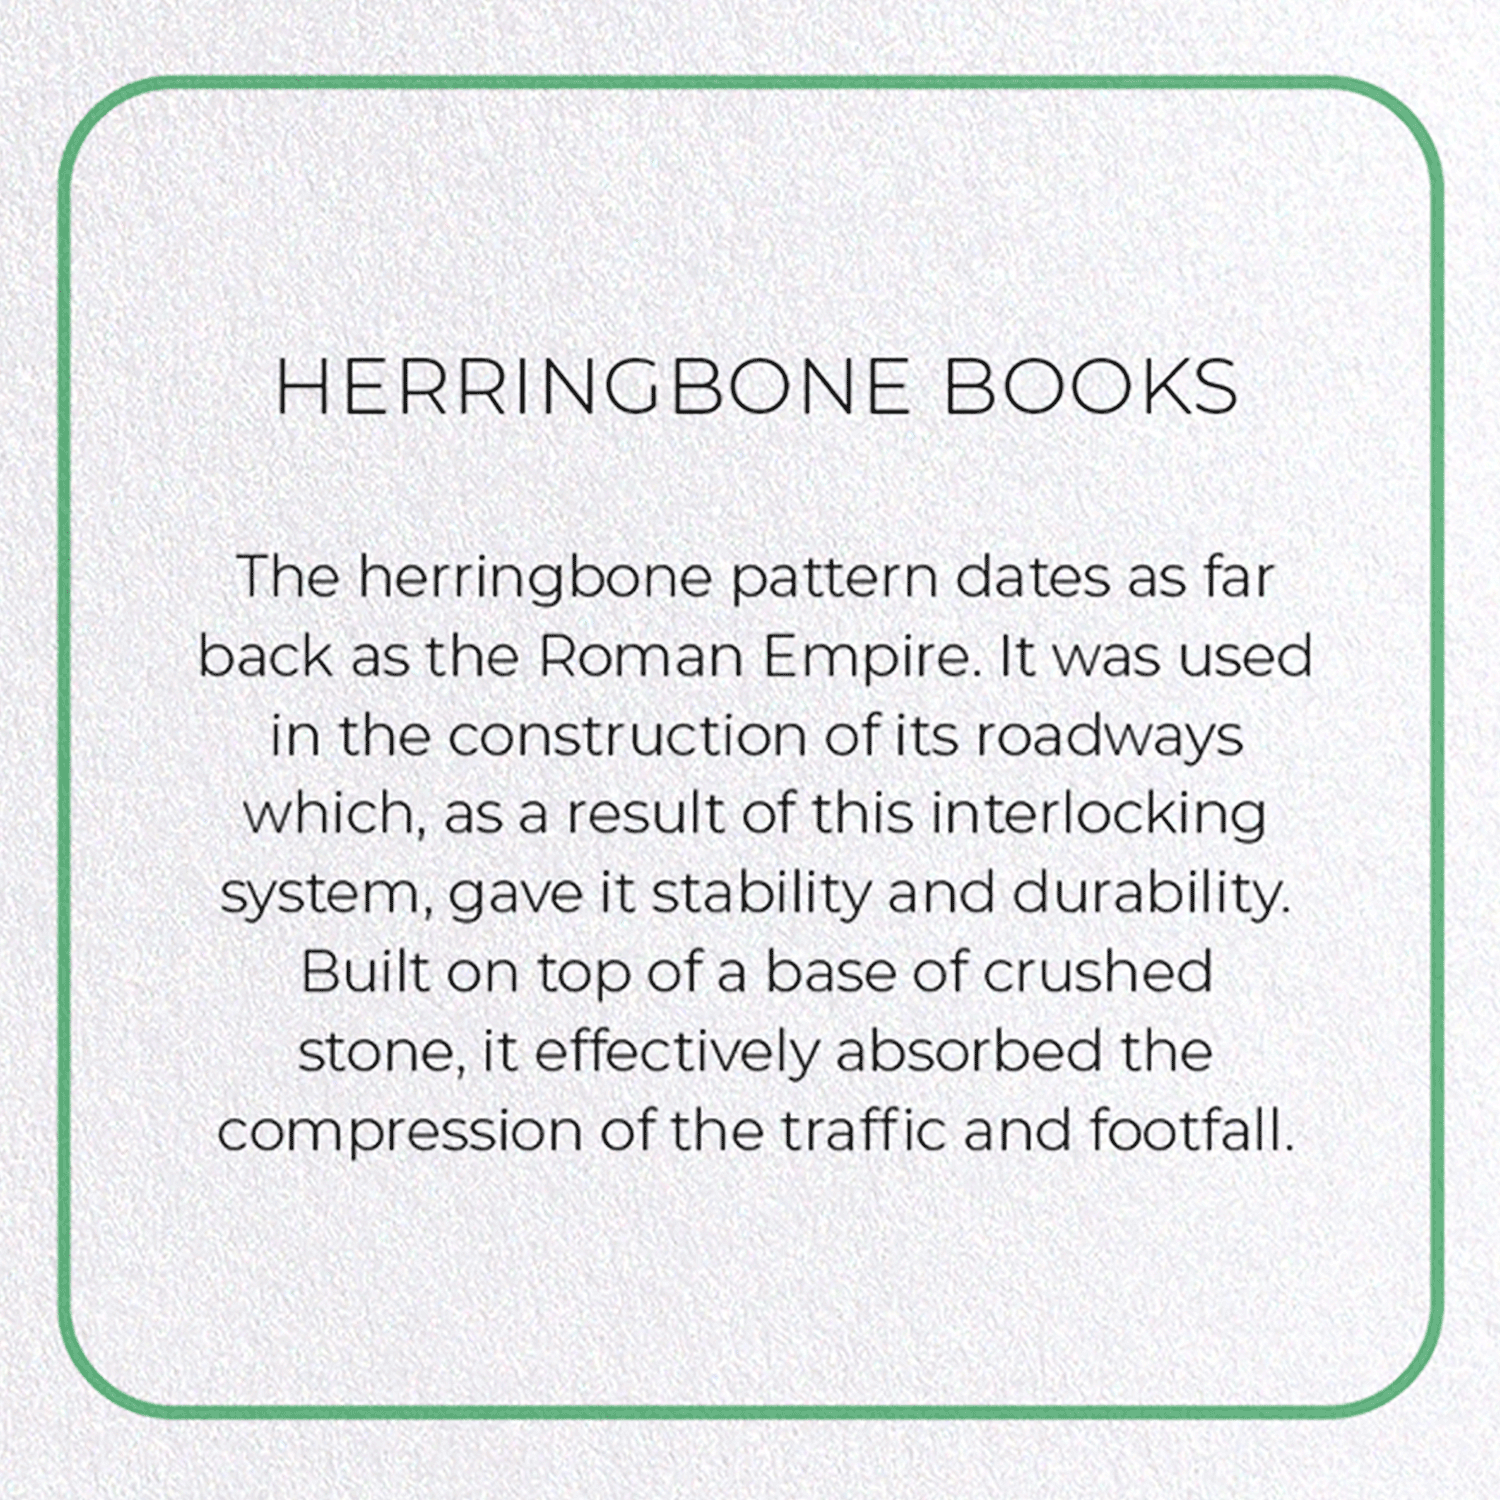 HERRINGBONE BOOKS